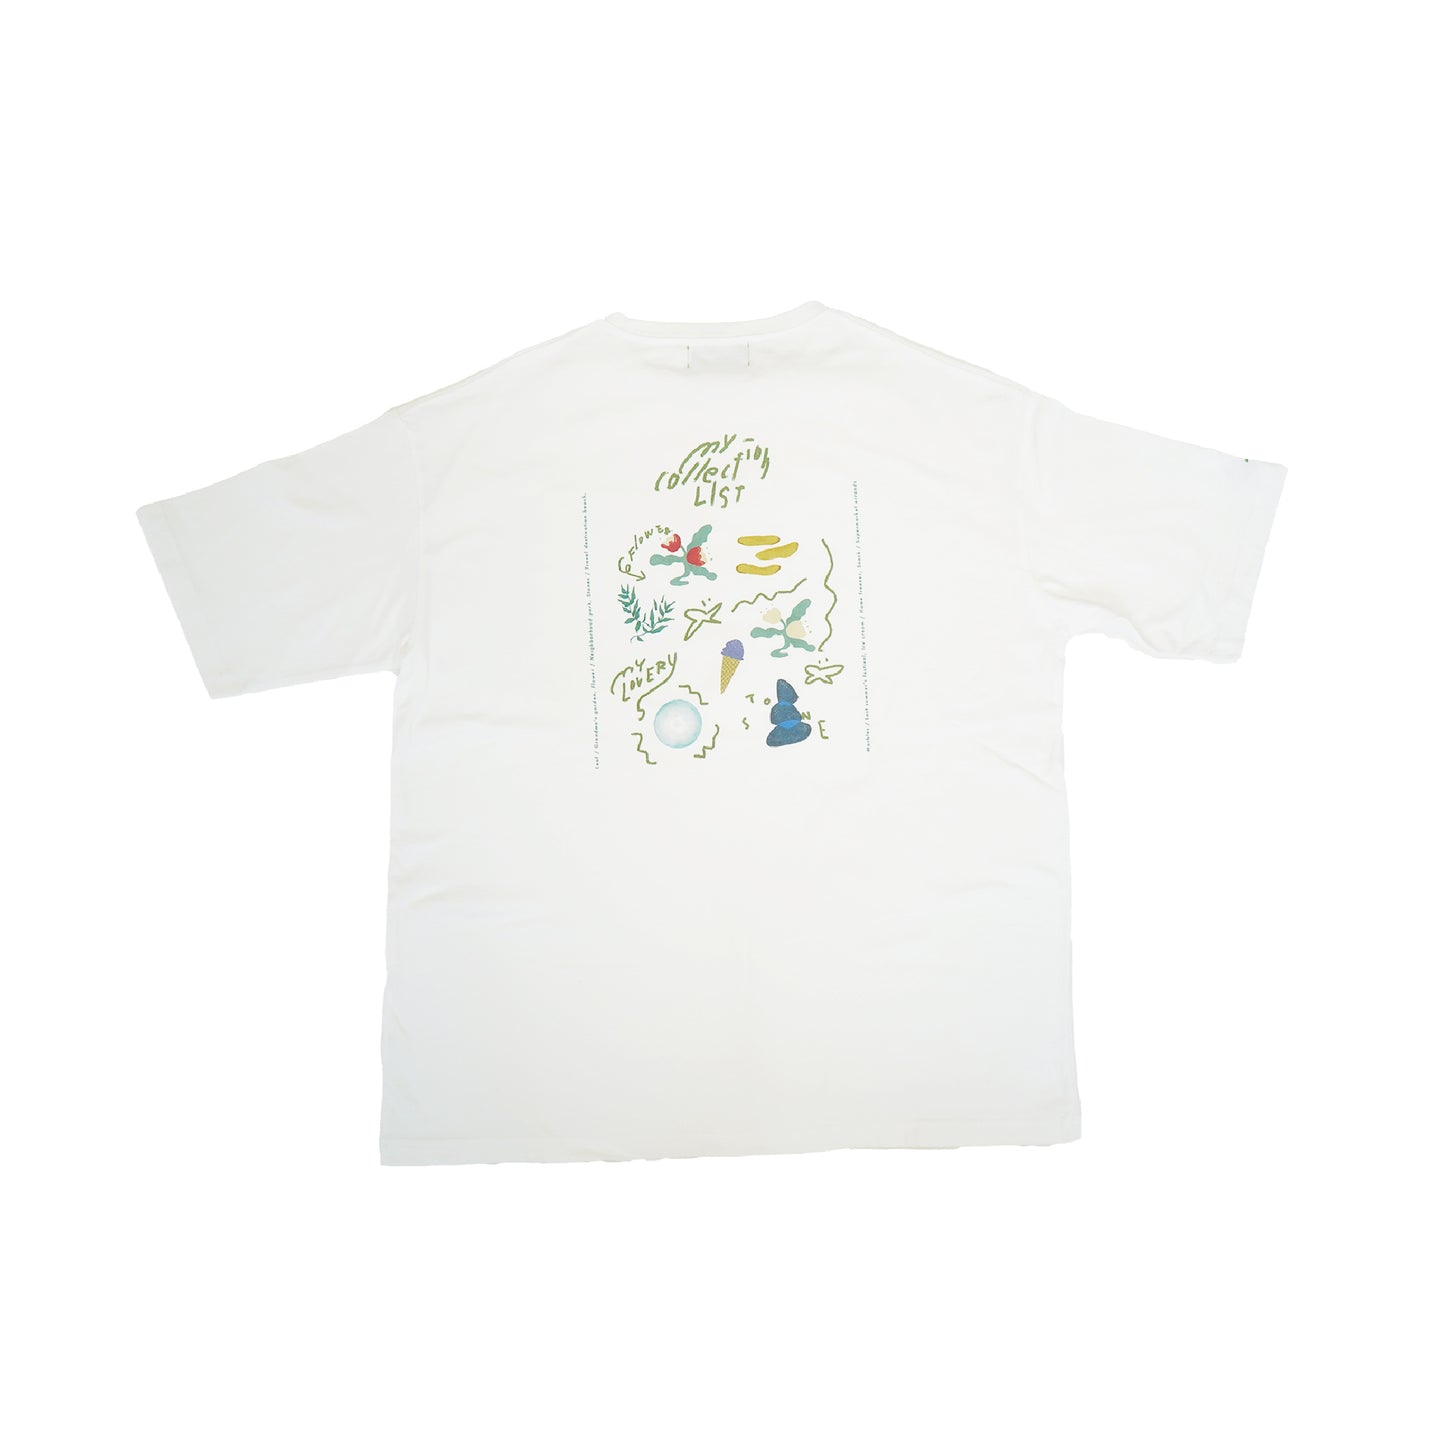 【Otona】My collection list T-shirt（マイコレクションリストTシャツ）